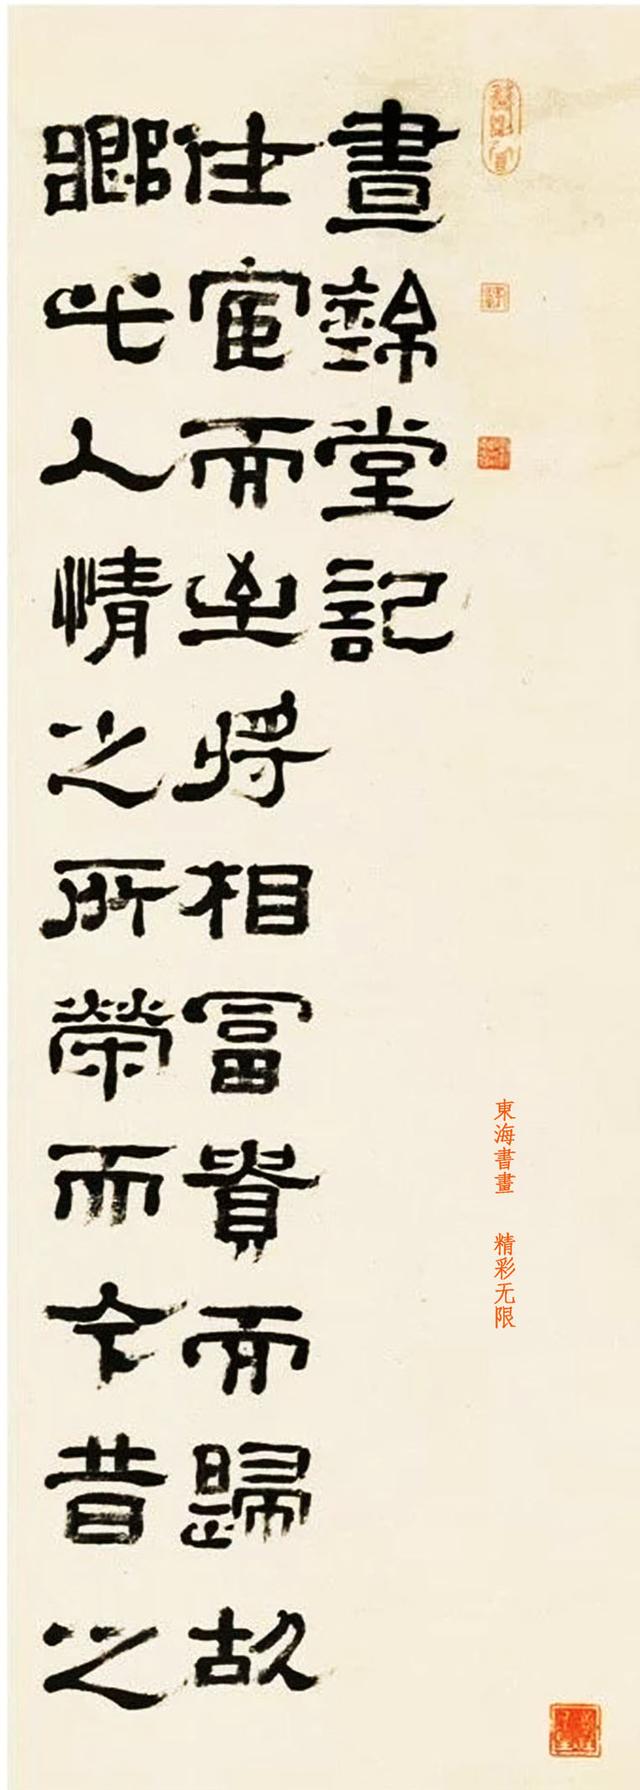 郑簠1688年隶书 昼锦记 十二屏立轴-好字无忧